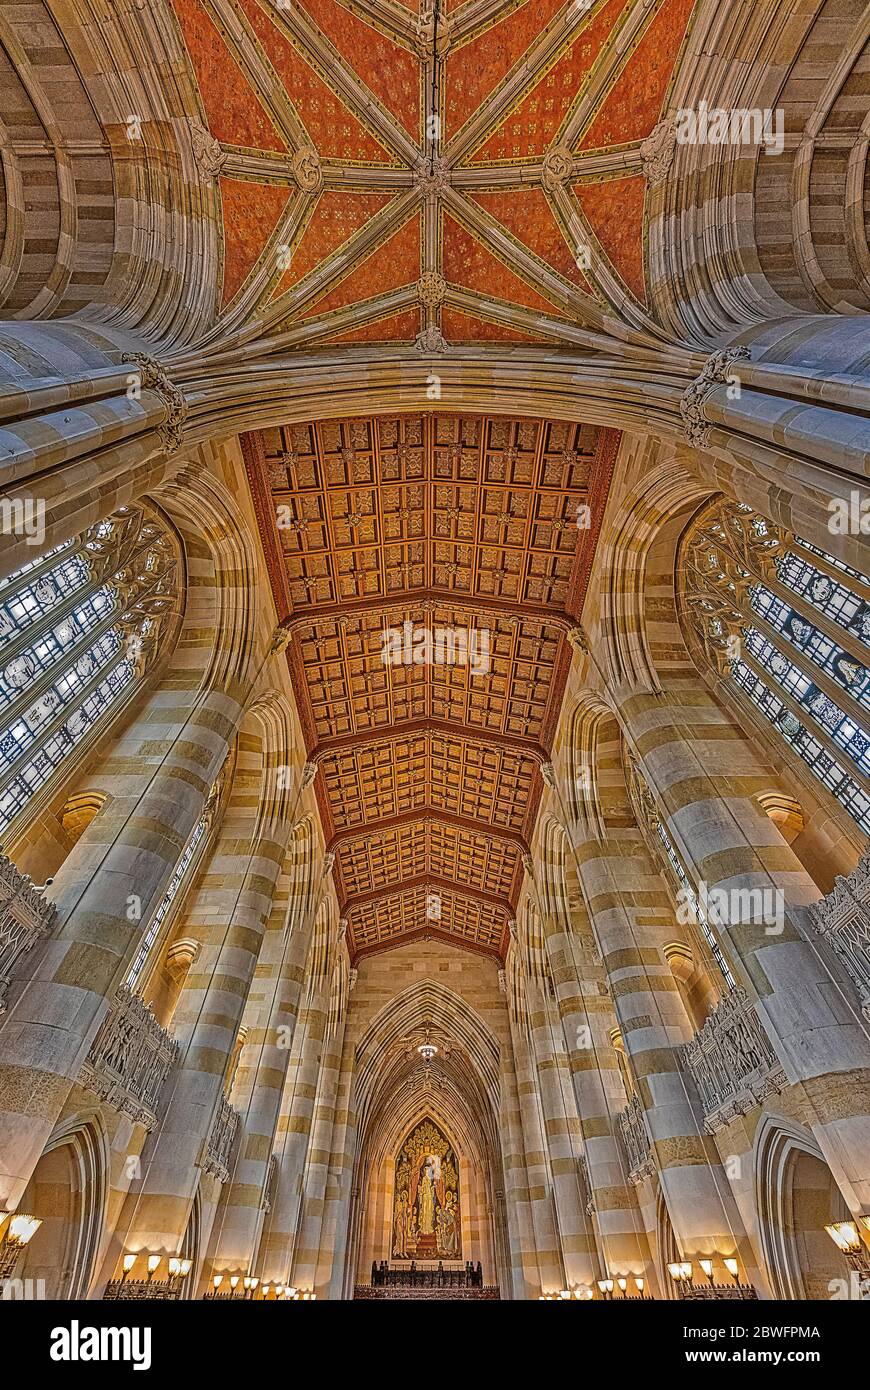 Sterling Library Yale University CT - Innenansicht der Stiftsbibliothek im gotischen Architekturstil an der Yale University. Stockfoto